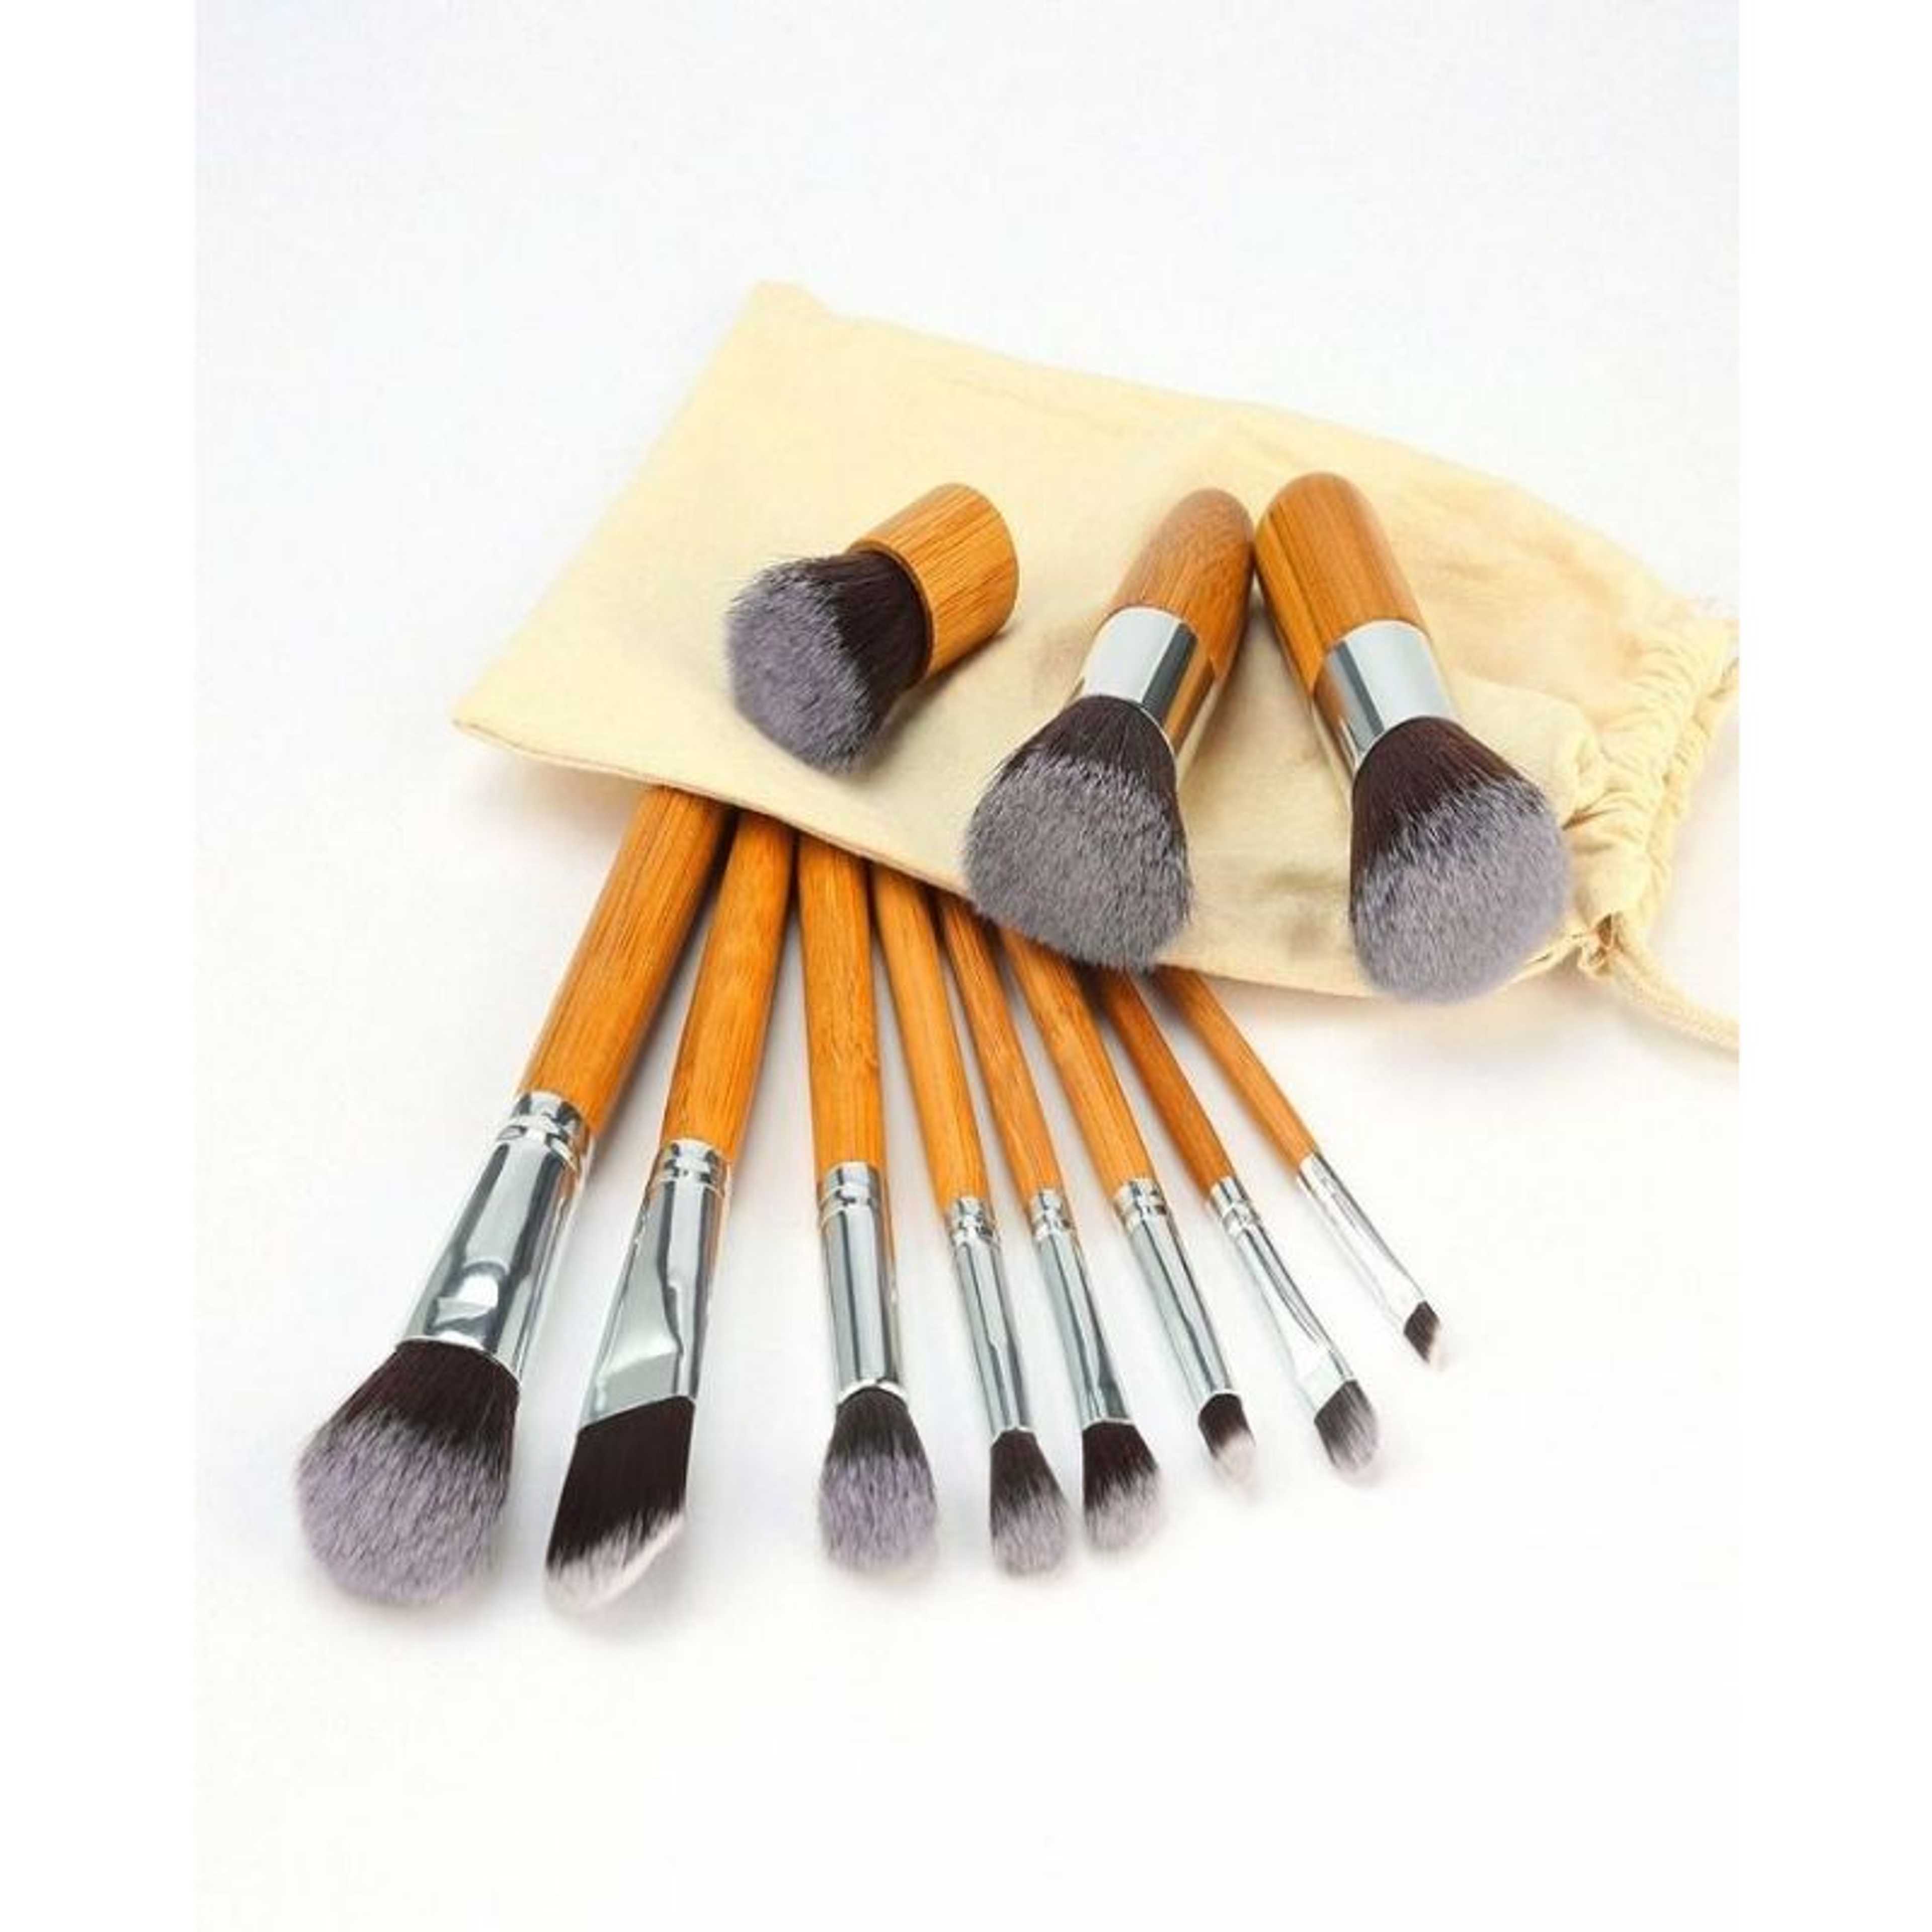 Professional Bamboo Makeup Brush Set 11 Pcs